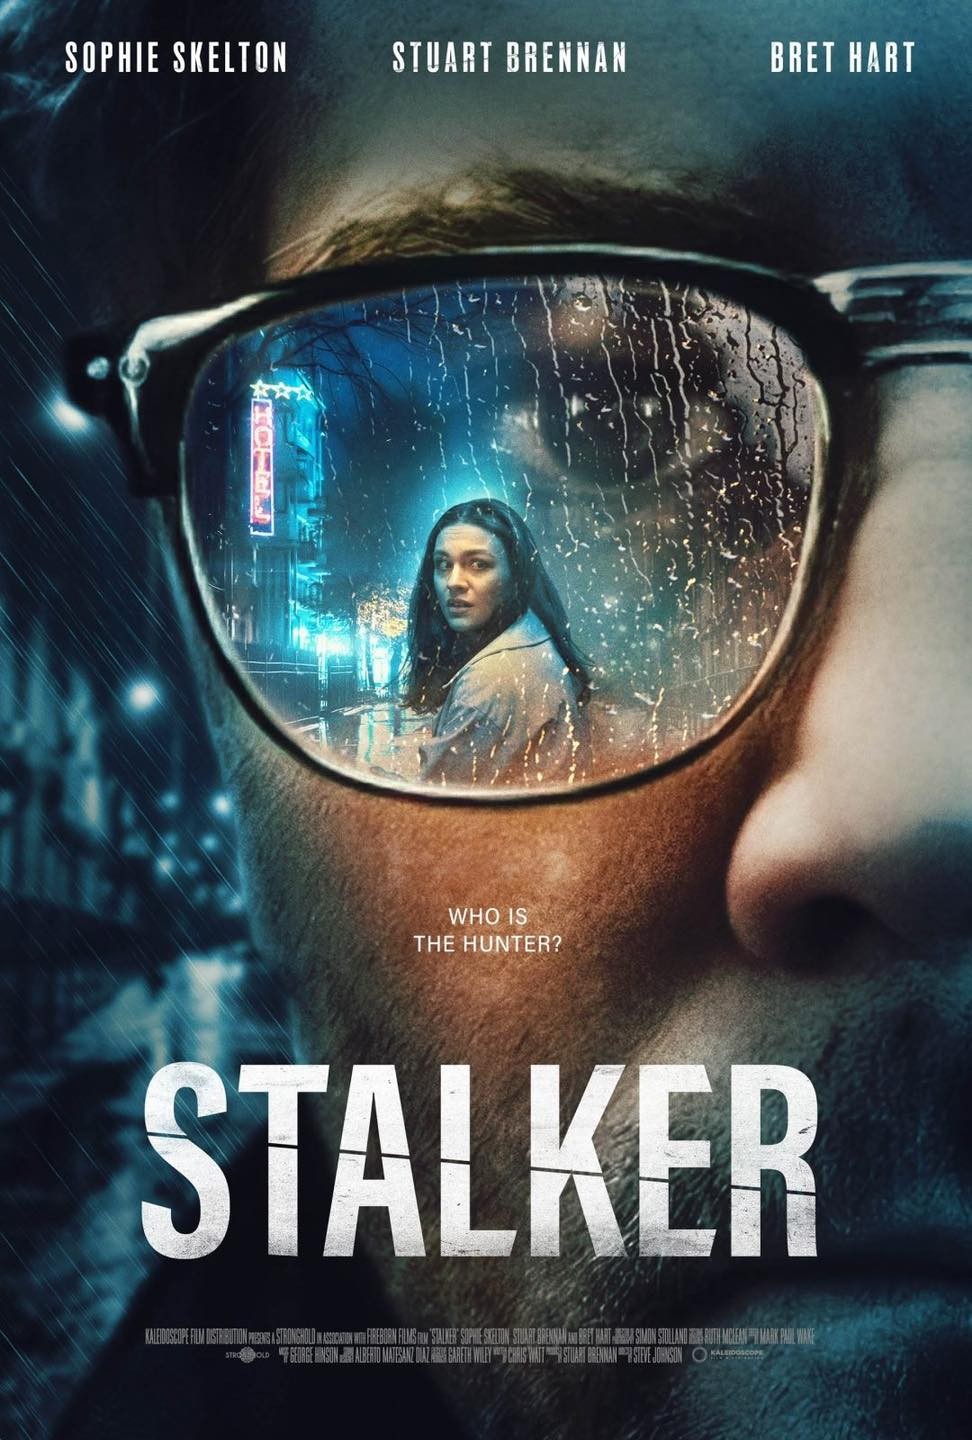 Stalker 2 Gets 2021 Release Date, a New Website